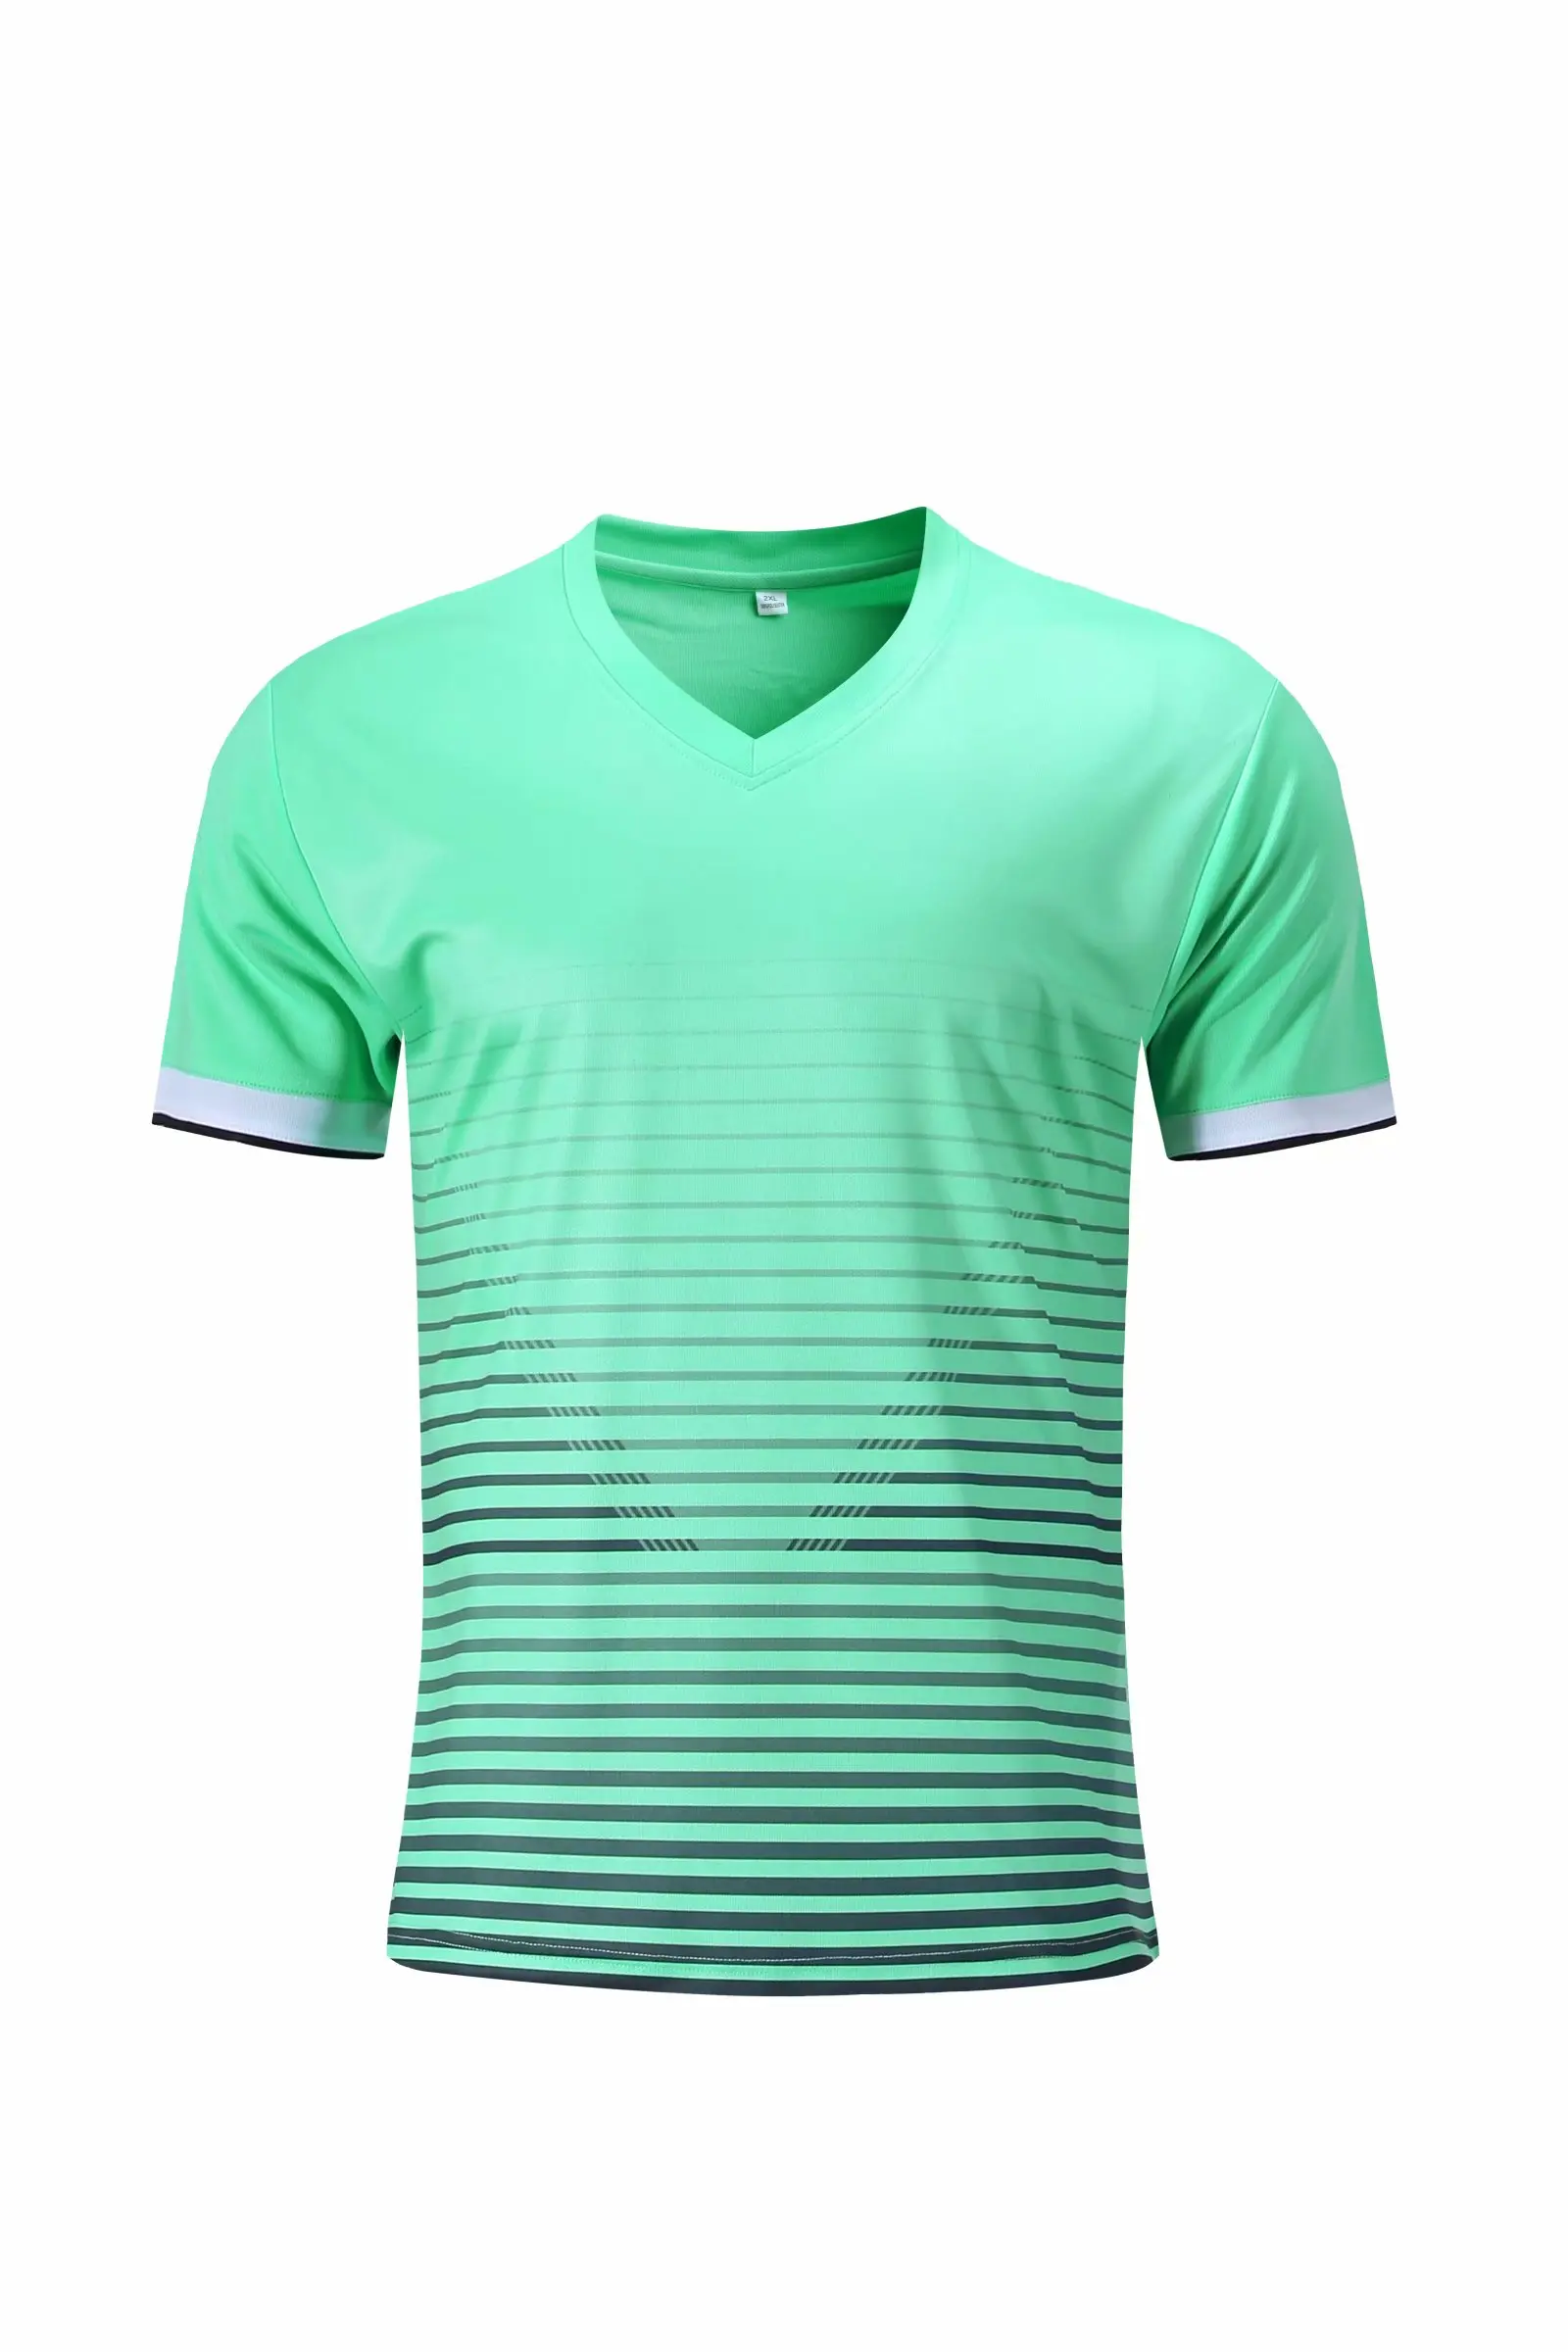 Спортивная рубашка для мужчин и женщин, футболки для фитнеса, бега, быстросохнущая футболка, уличная спортивная одежда для тренировок, футбола, Джерси, спортивная одежда для бега - Цвет: 8053 green